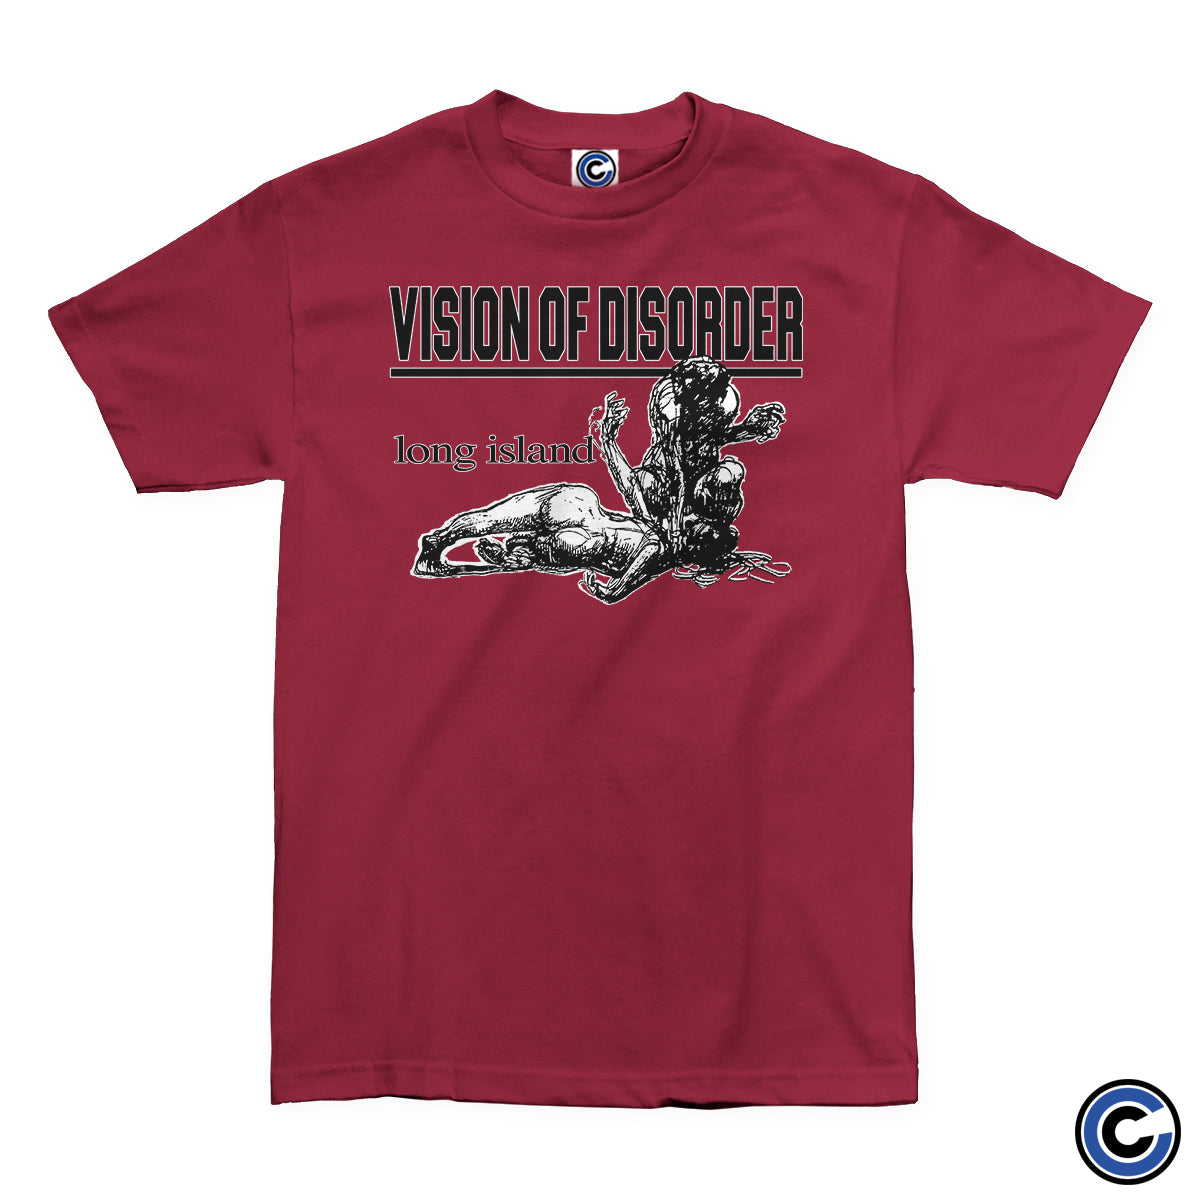 Vision of Disorder "Bleeder" Shirt